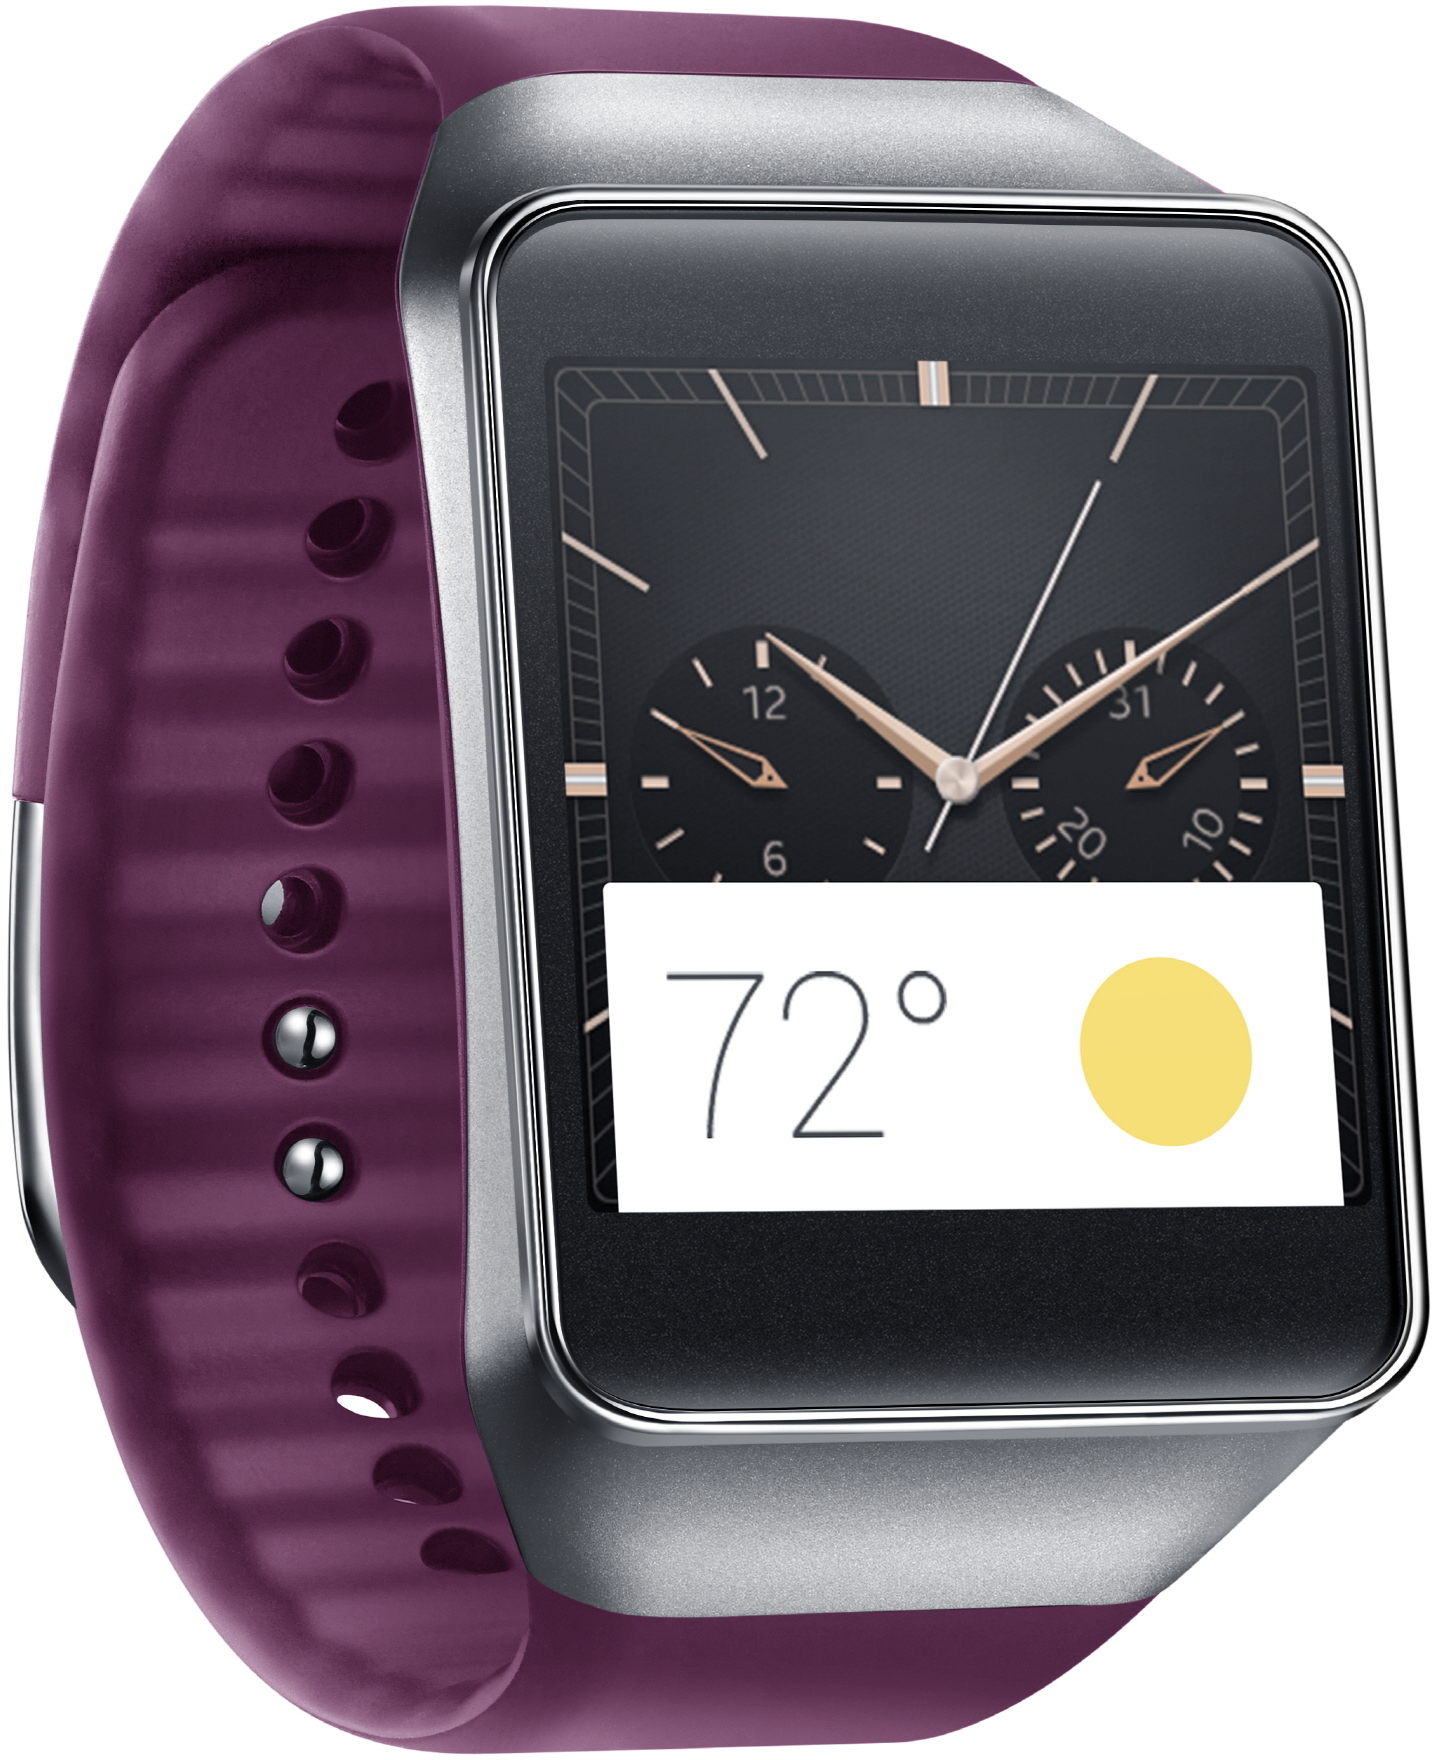 Samsung Gear Live sur Android Wear : fiche technique, prix et date de sortie de la montre connectée